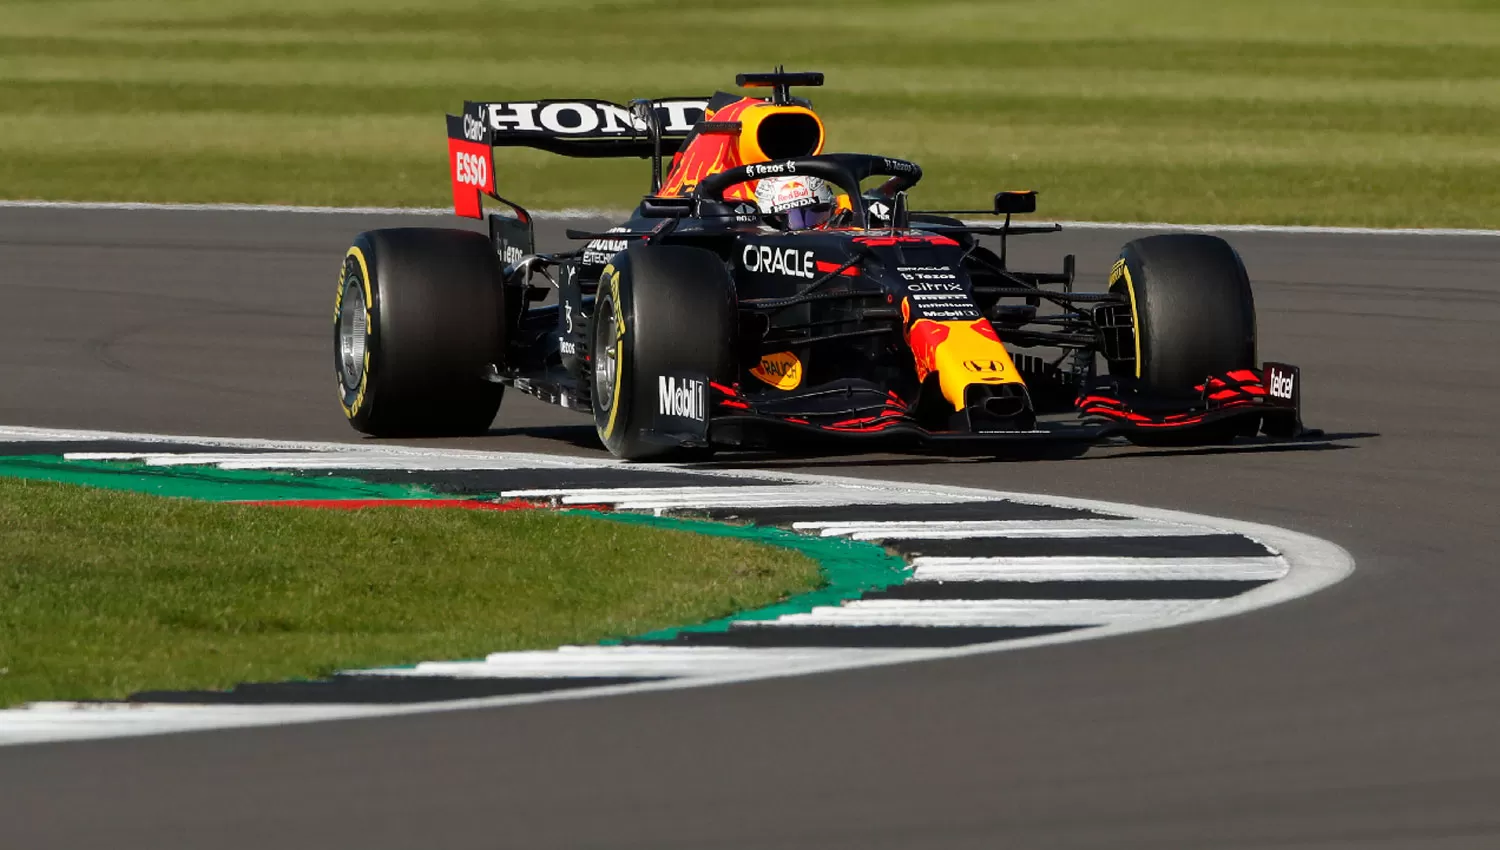 LÍDER. Verstappen quiere seguir agigantando sus chances de arrebatarle el reinado a Hamilton.